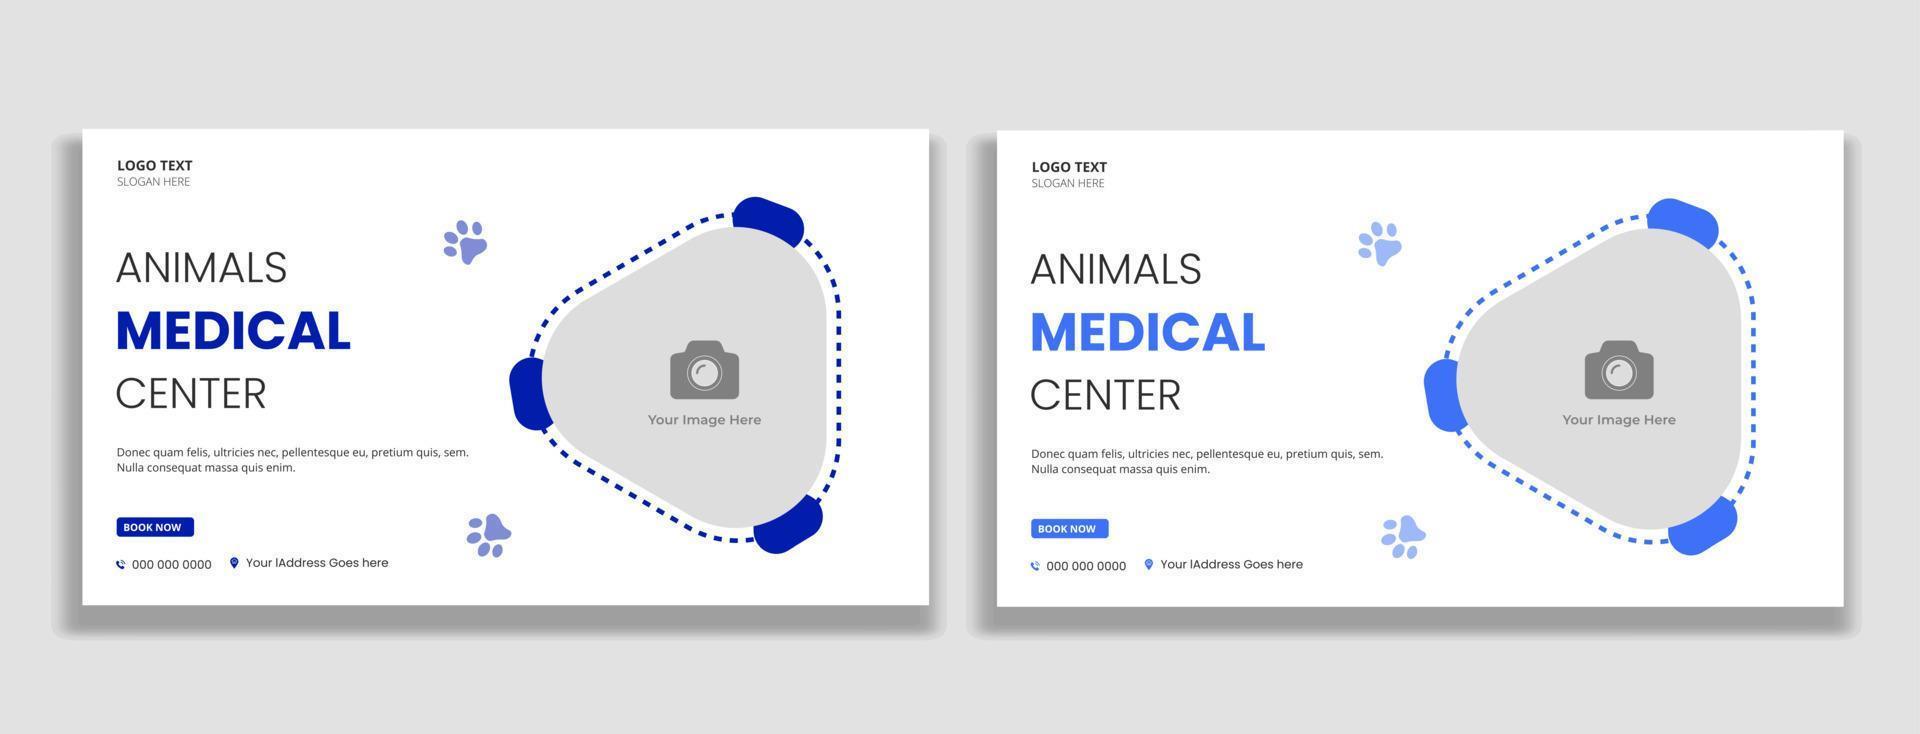 vignette de centre médical pour animaux et modèle de bannière web vecteur